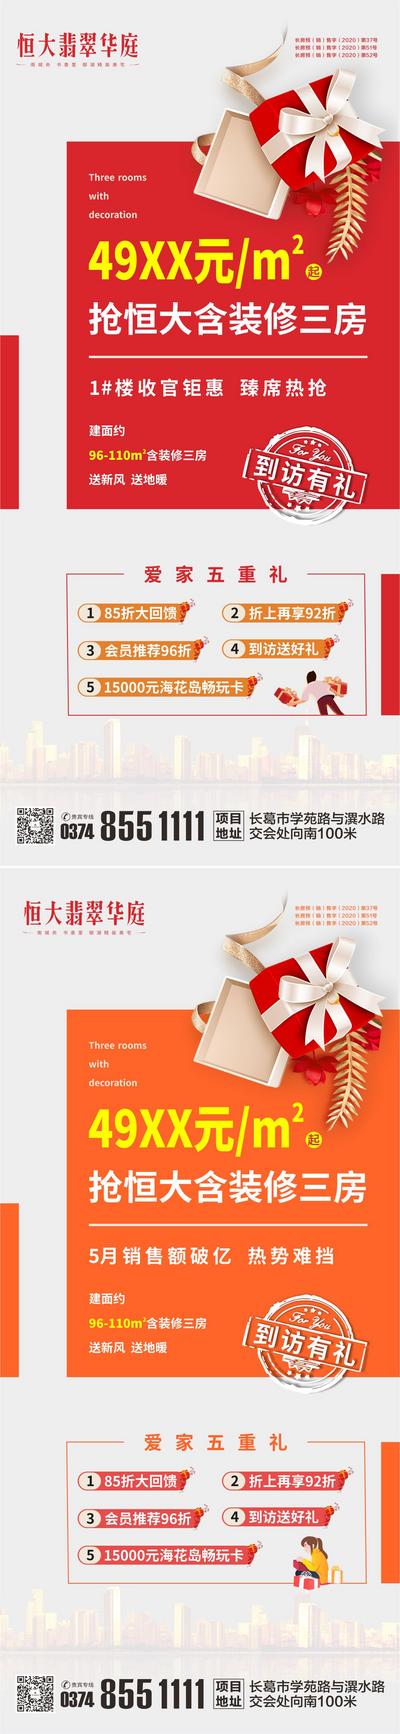 南门网 房地产政策促销优惠朋友圈微信海报设计